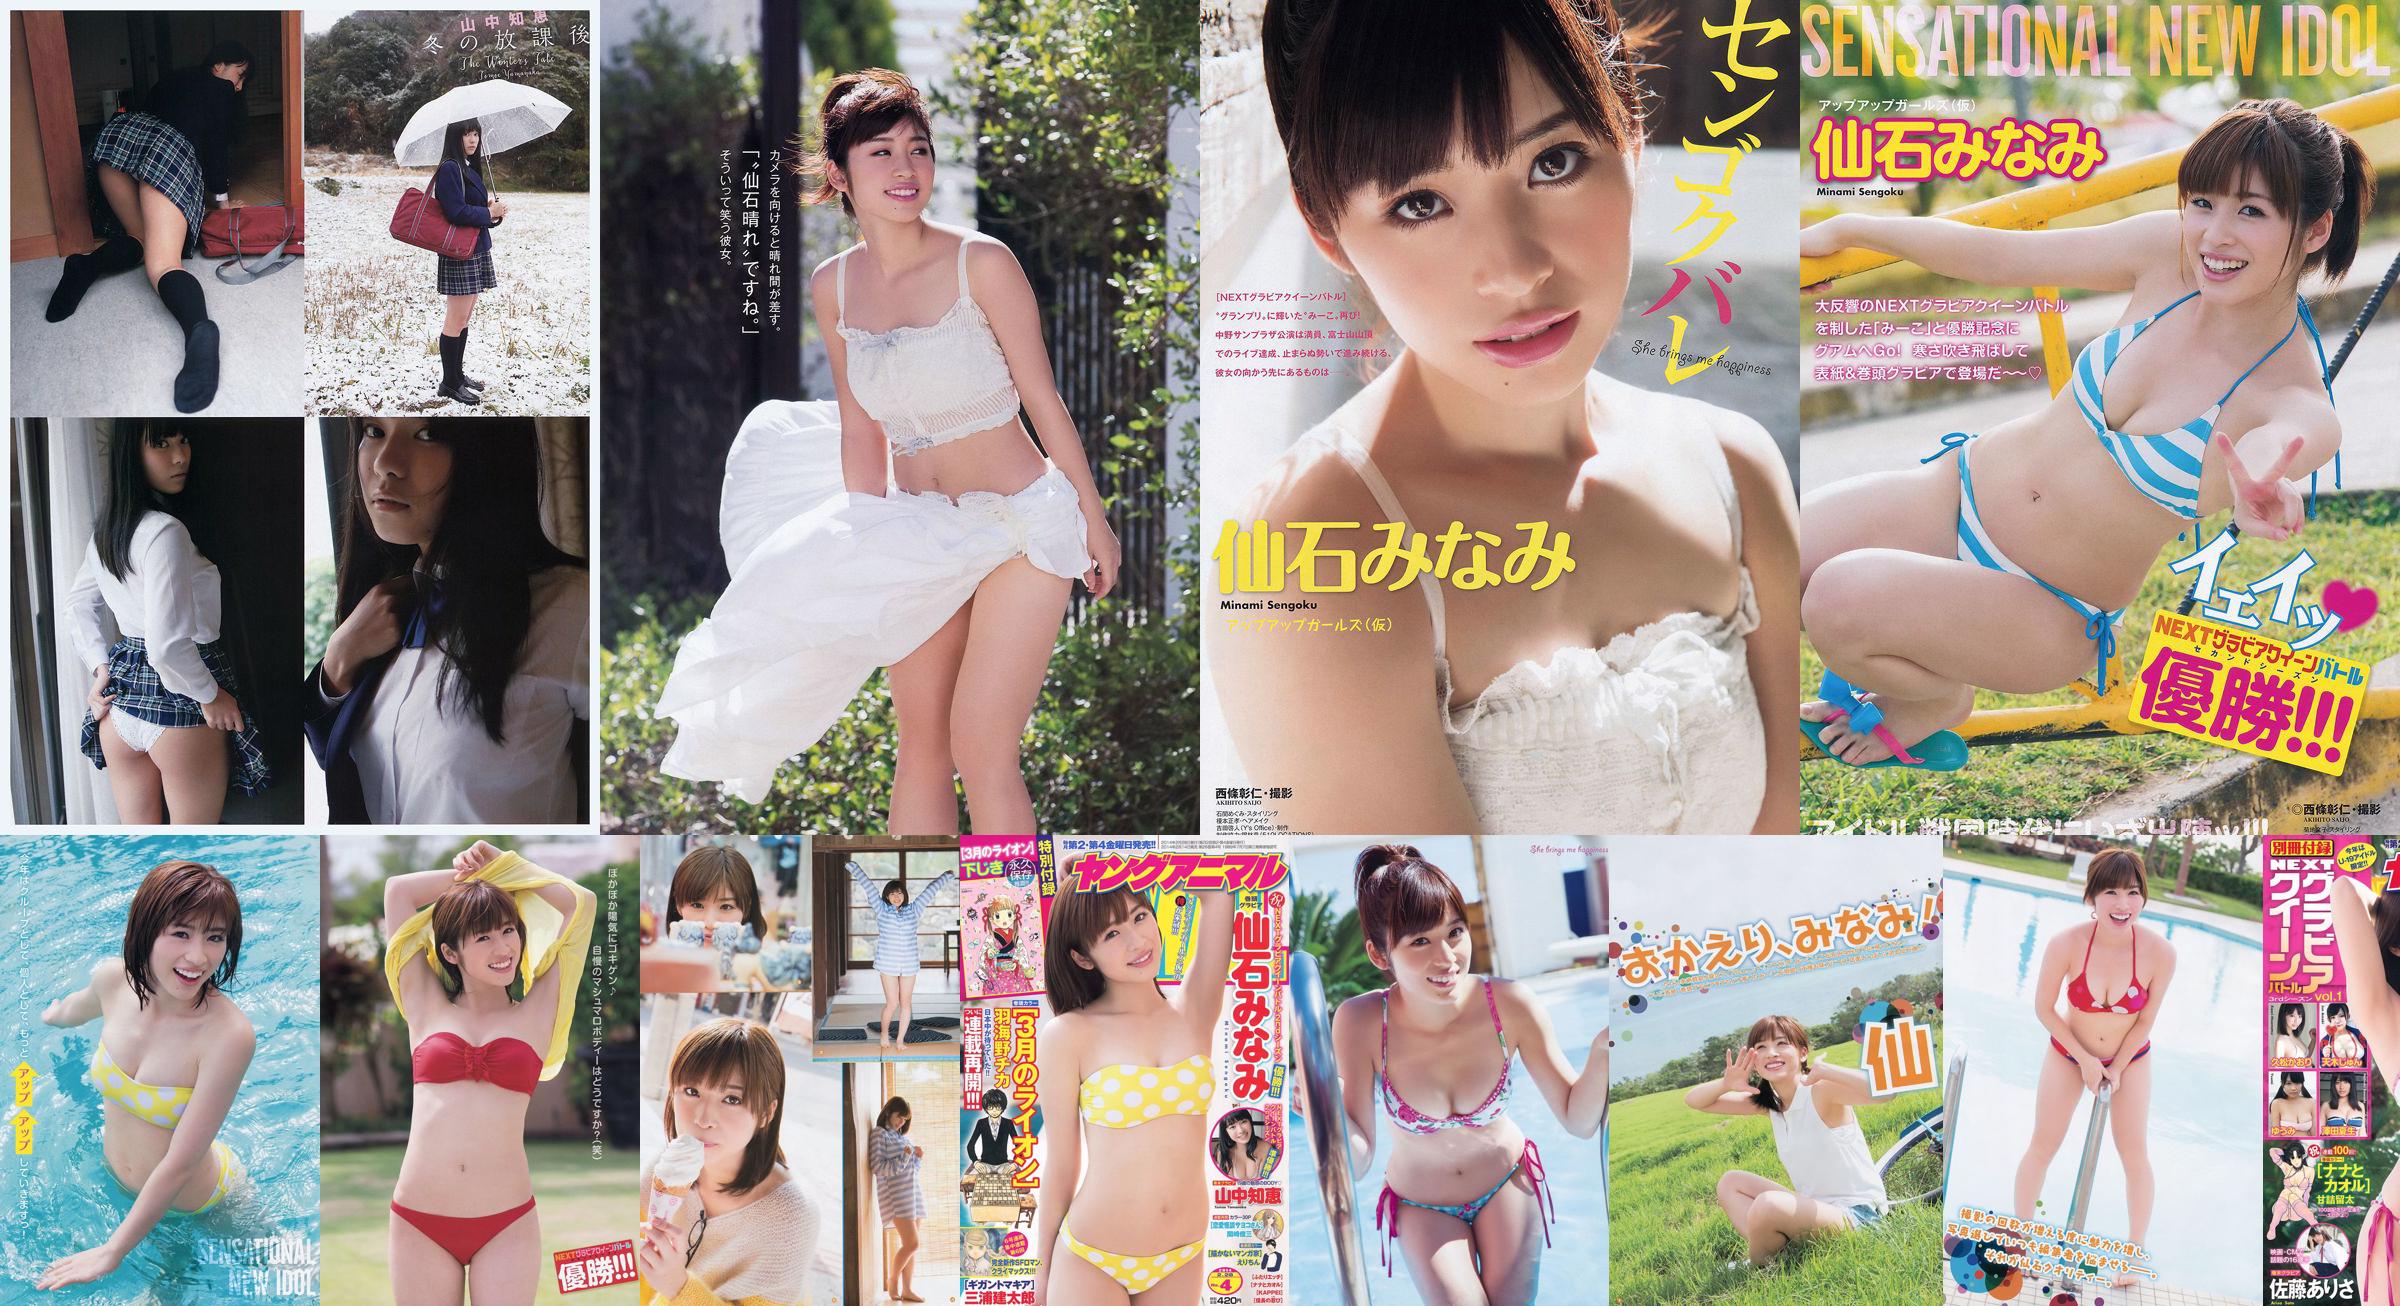 [Young Gangan] Senshi みなみ Yamanaka Tomoji Shiraishi アヤ Kataoka Saya 2014 No.01 Photo Magazine No.4c639c Seite 5